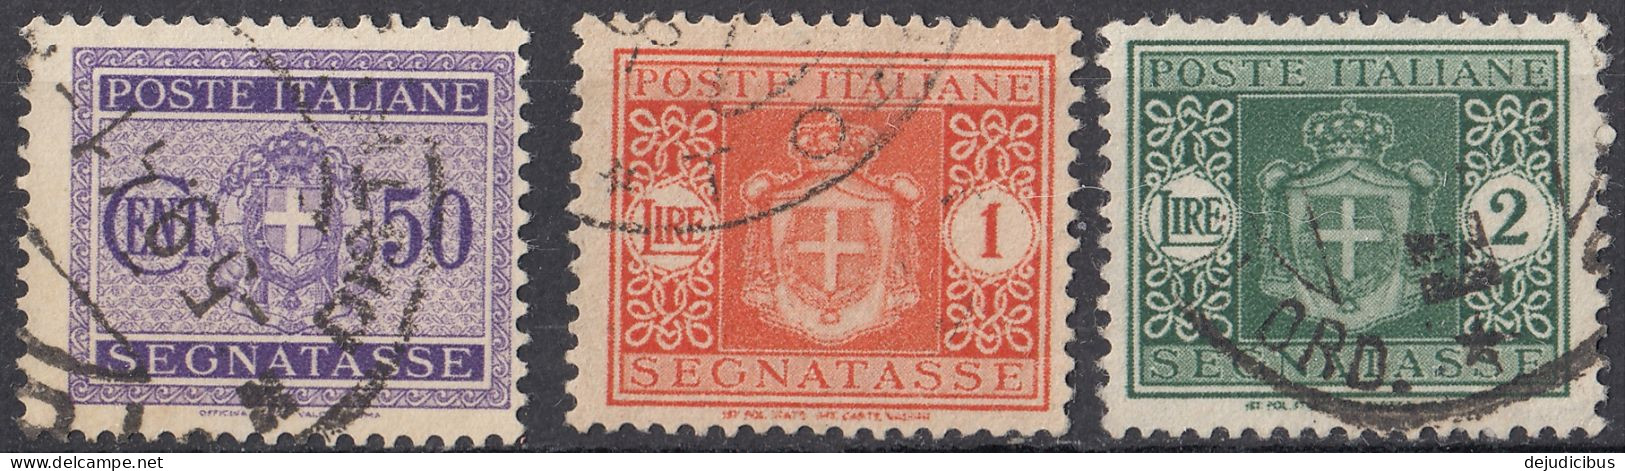 ITALIA - 1934 - Segnatasse -  Lotto Di 3 Valori Usati: Yvert  34, 36 E 37. - Strafport